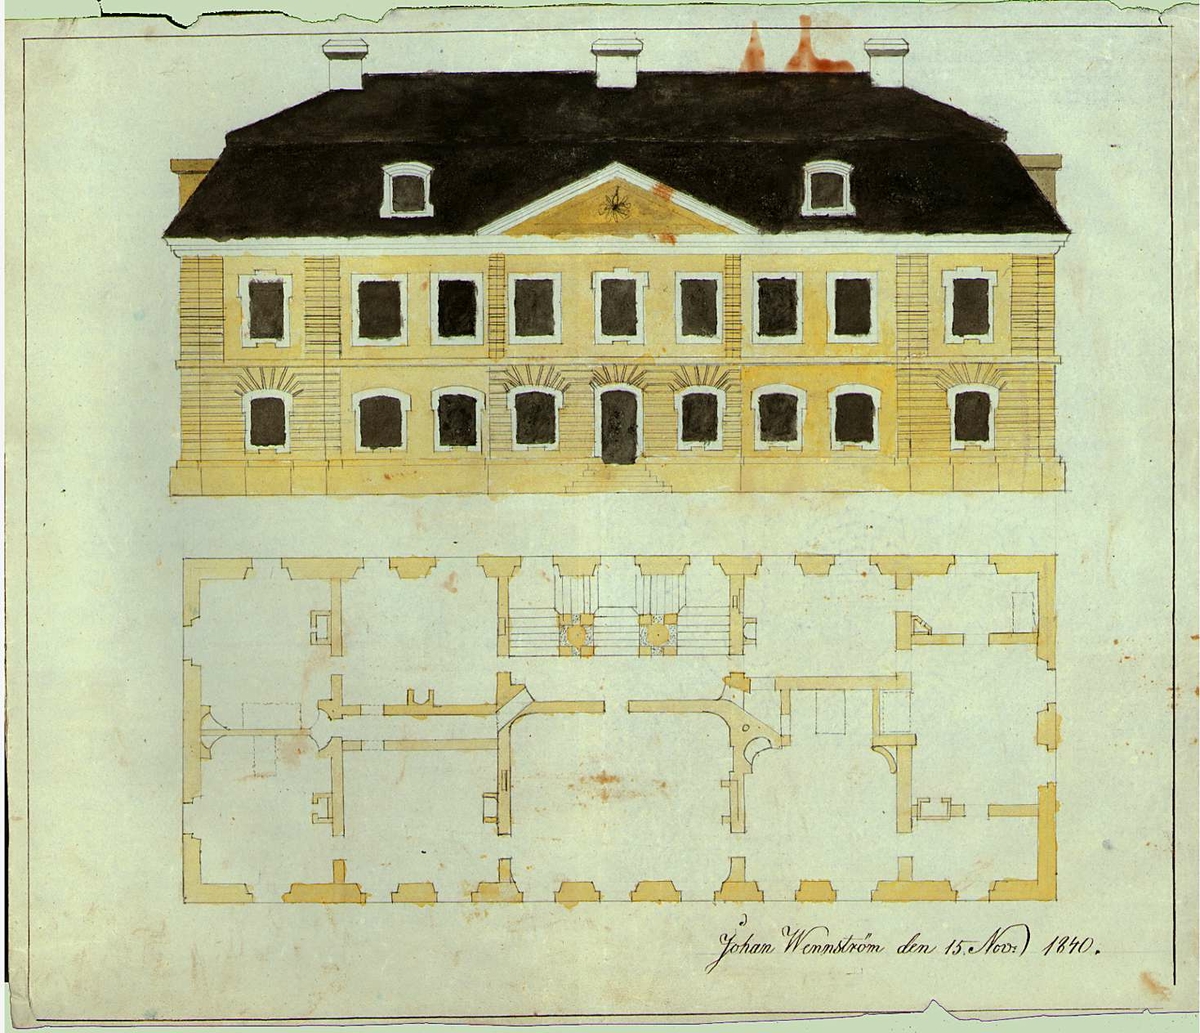 Fasad- och planritning för bostadshus signerad Johan Wennström 15 november 1840.